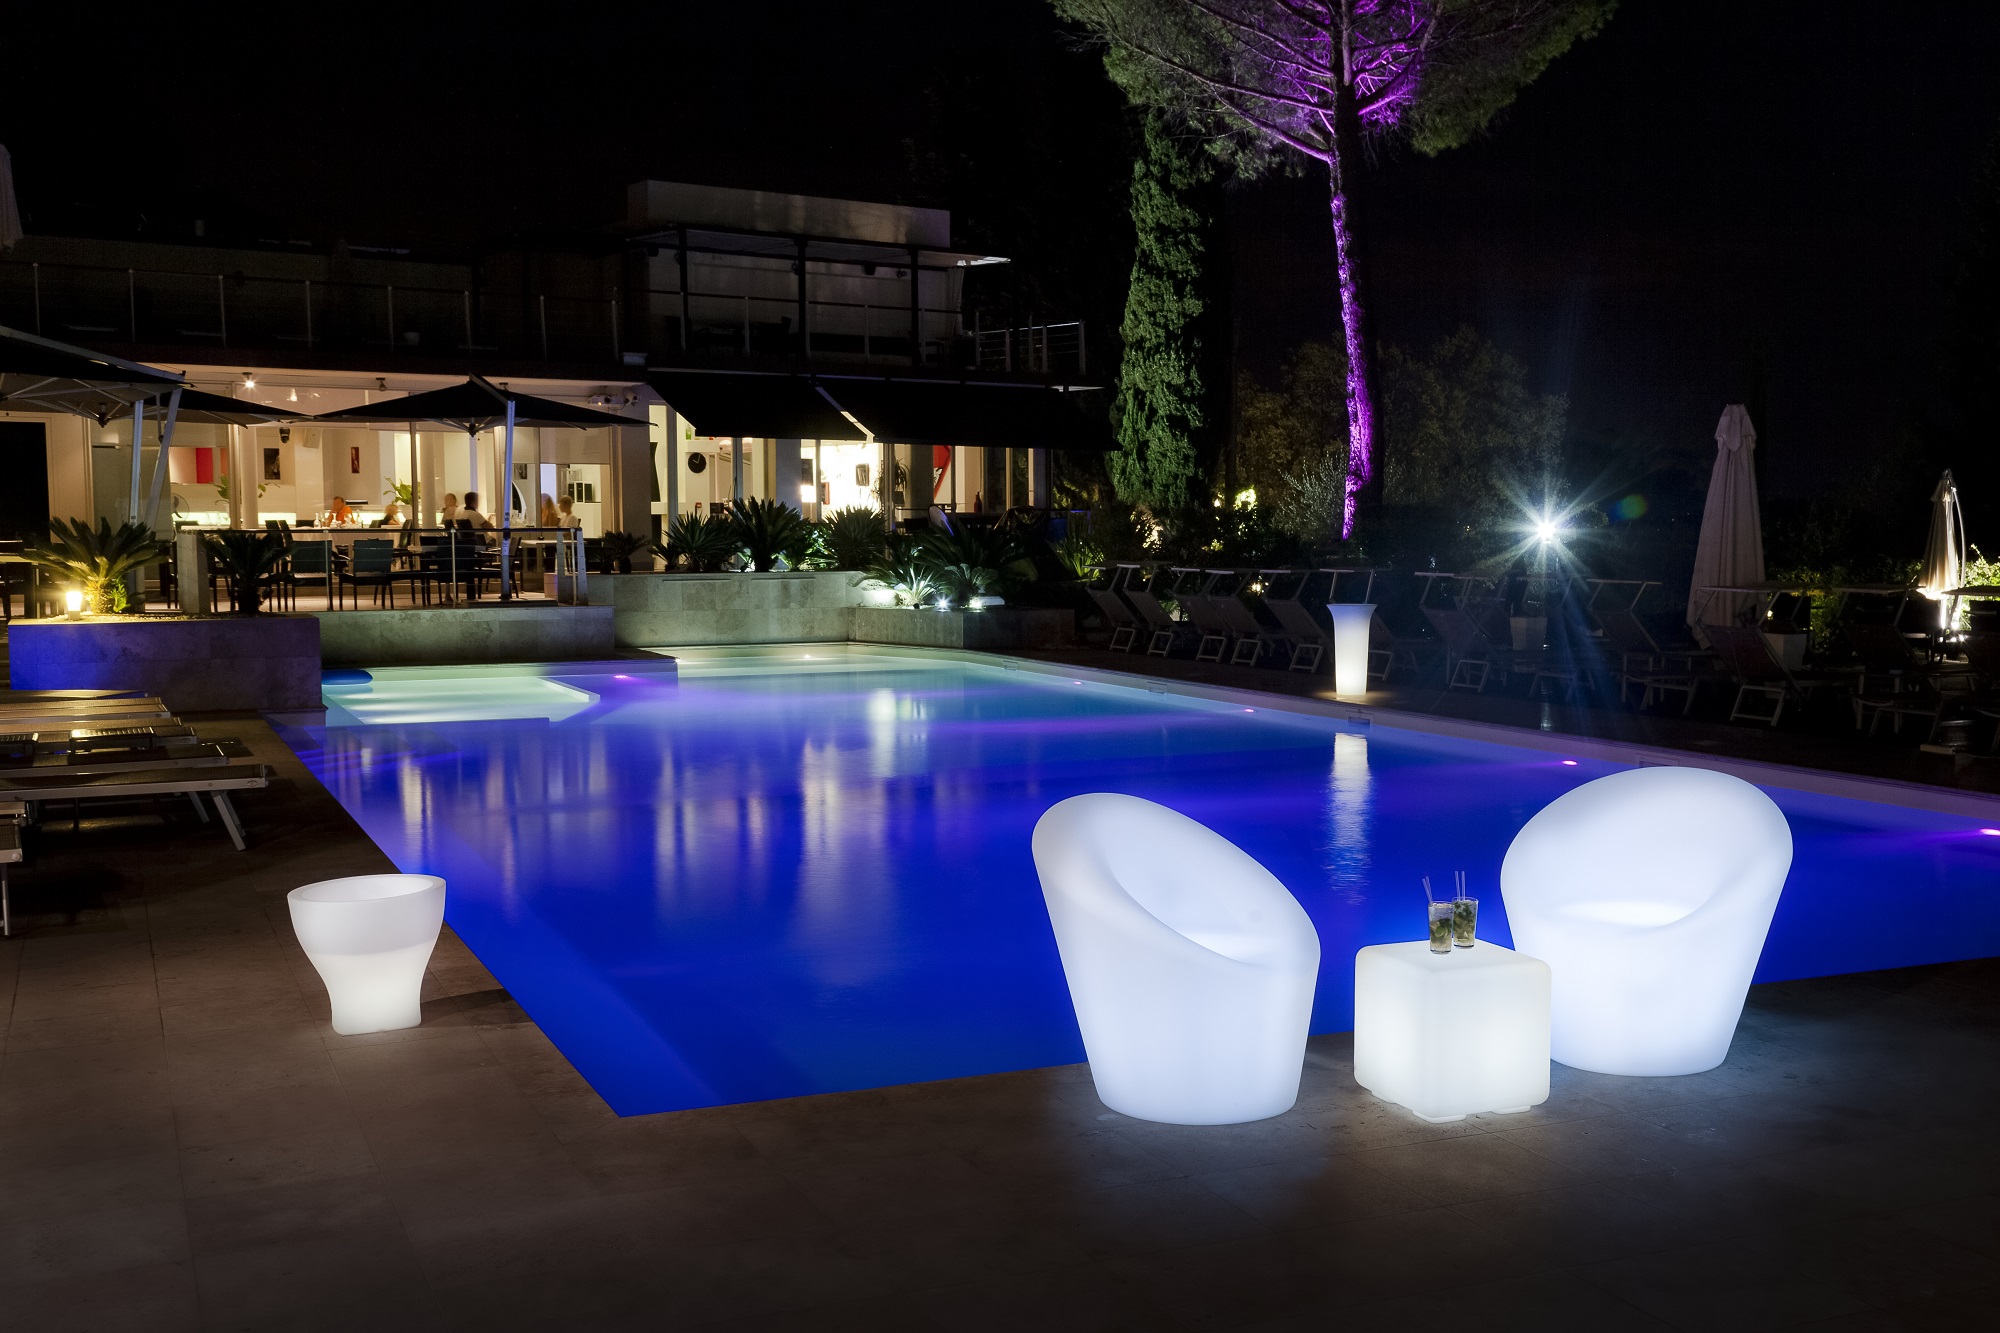 muebles con iluminación LED para decorar jardines, terrazas y pubs nocturnos